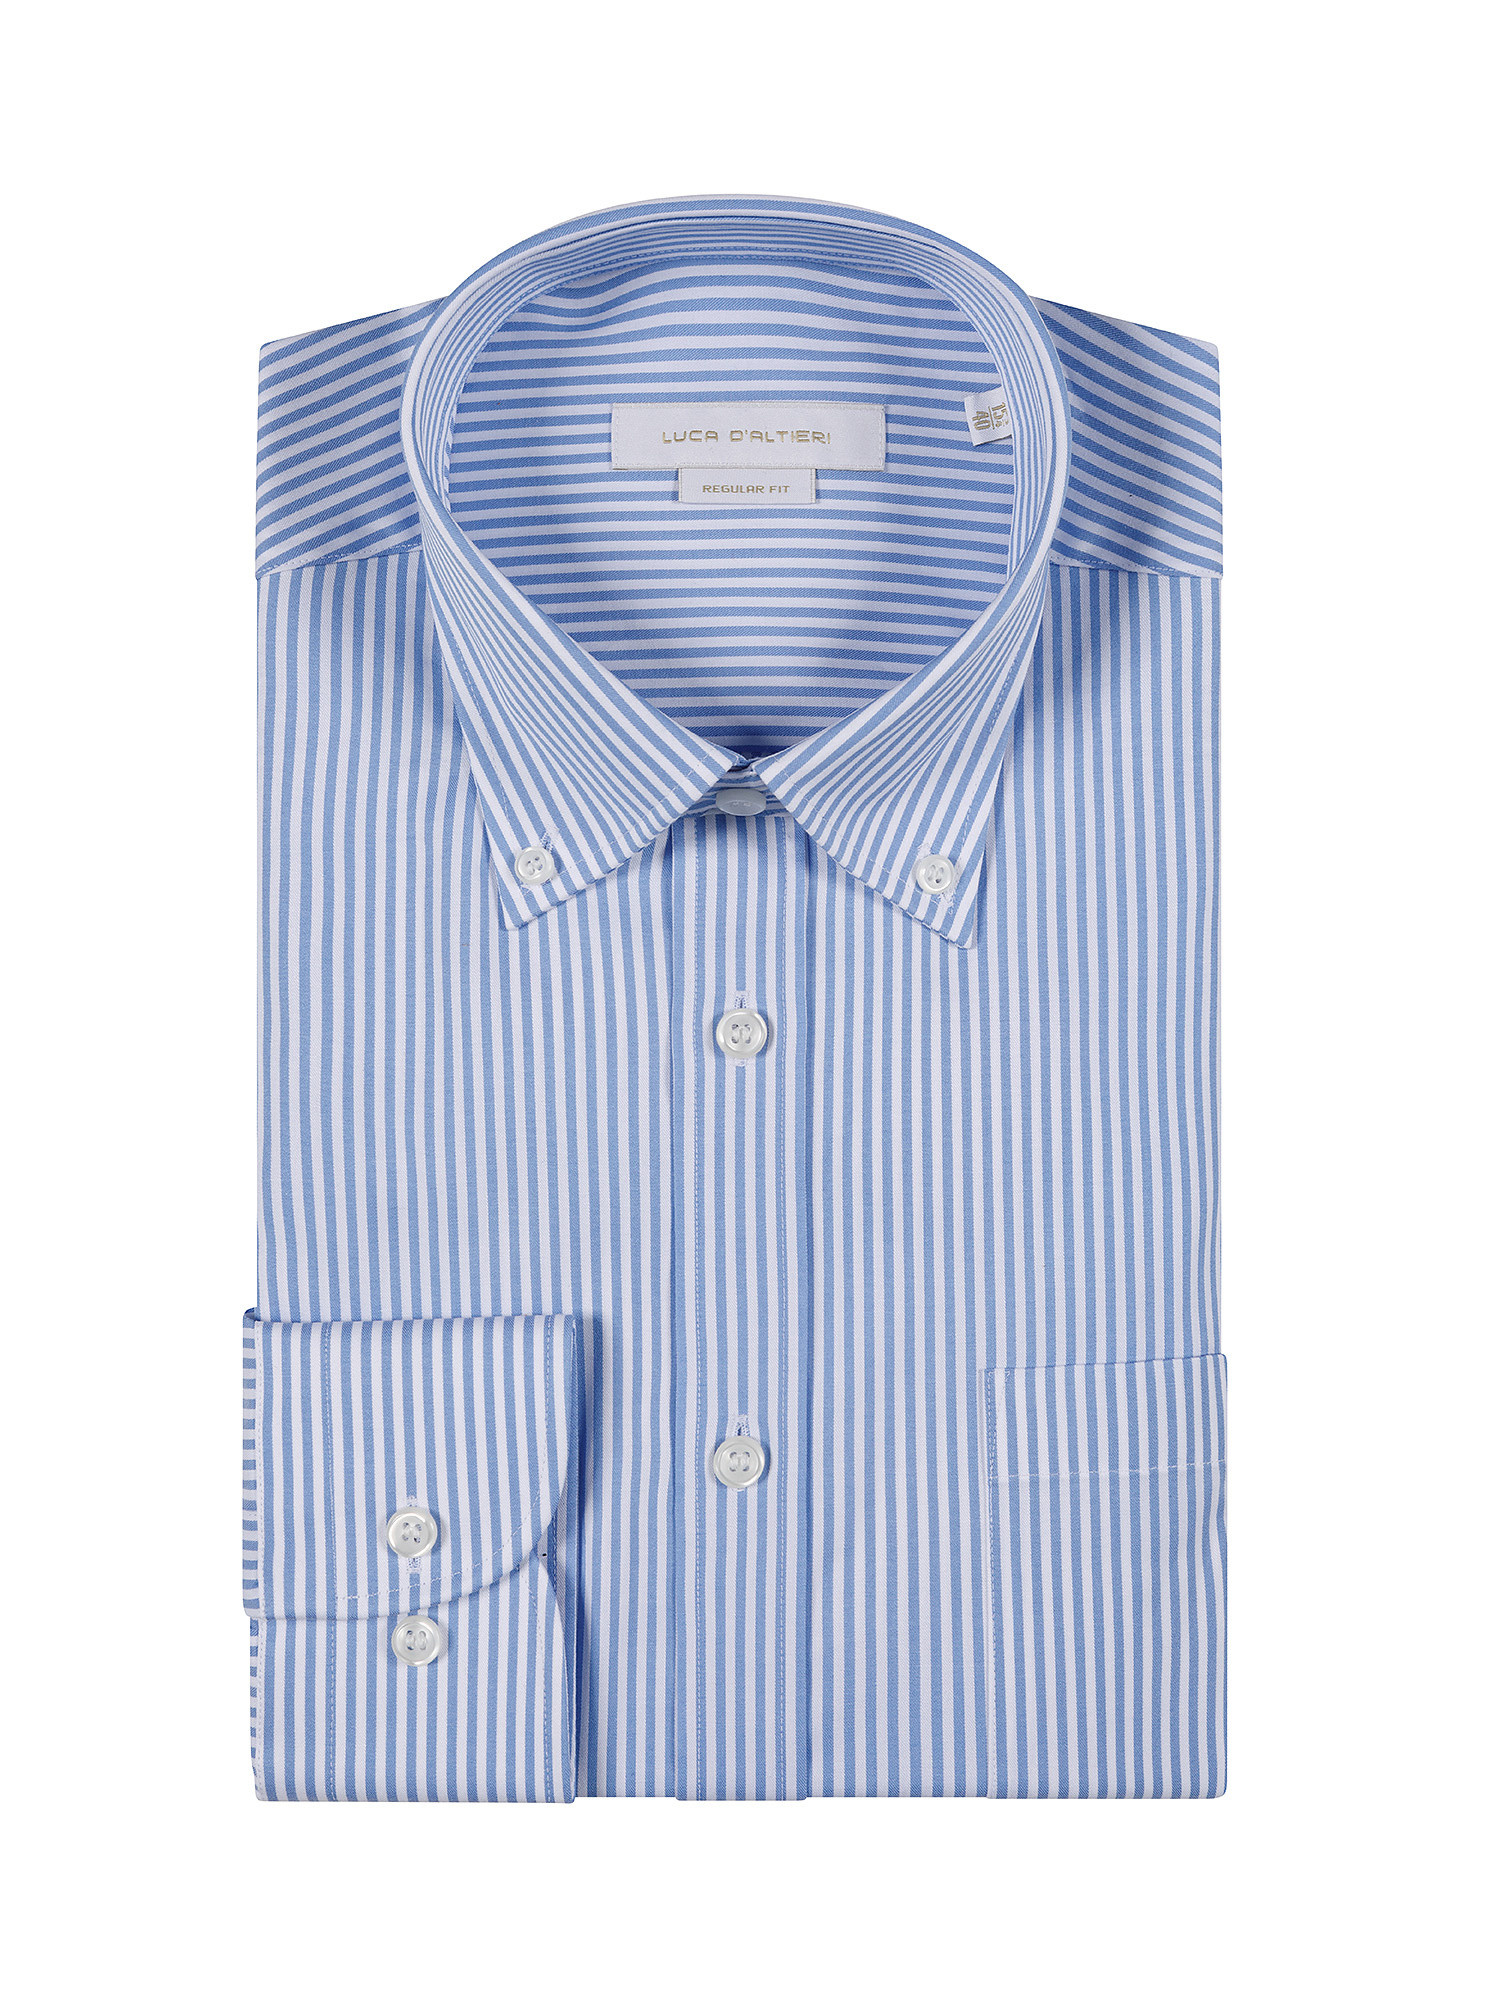 Regular fit cotton poplin shirt, Light Blue, large image number 2